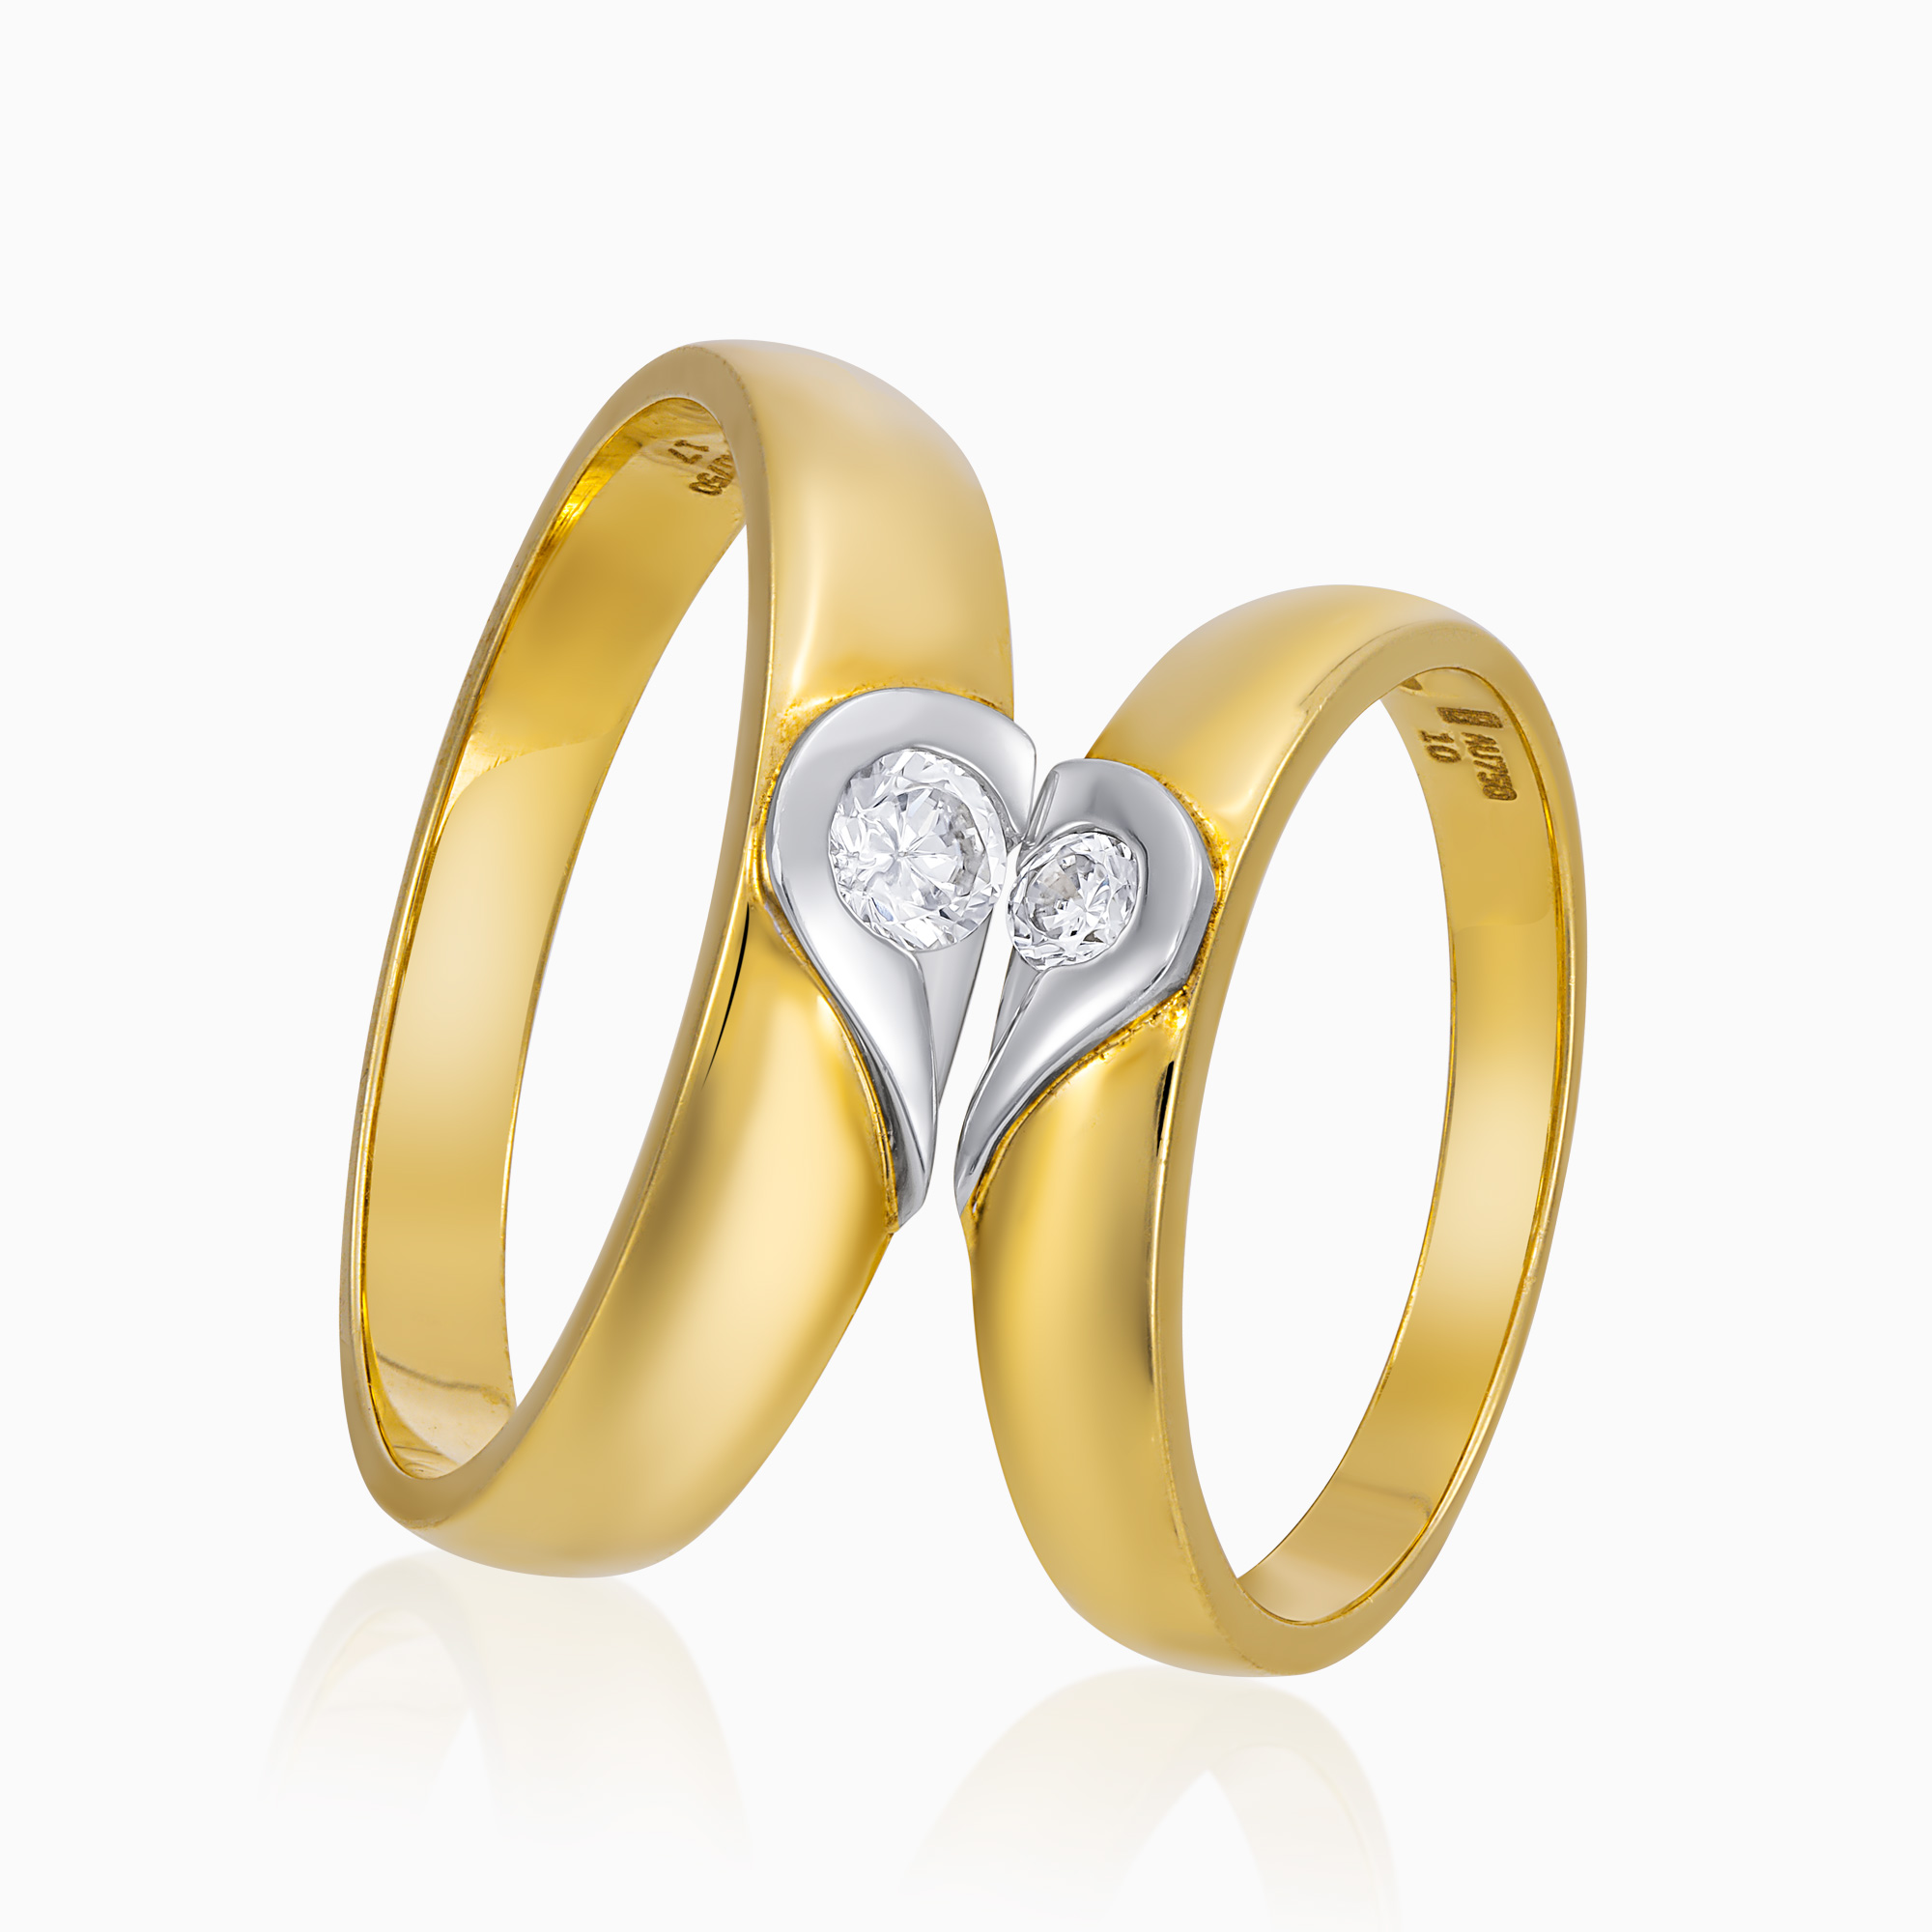 1 cặp nhẫn cưới vàng 18k giá bao nhiêu là vừa? Mua ở đâu?